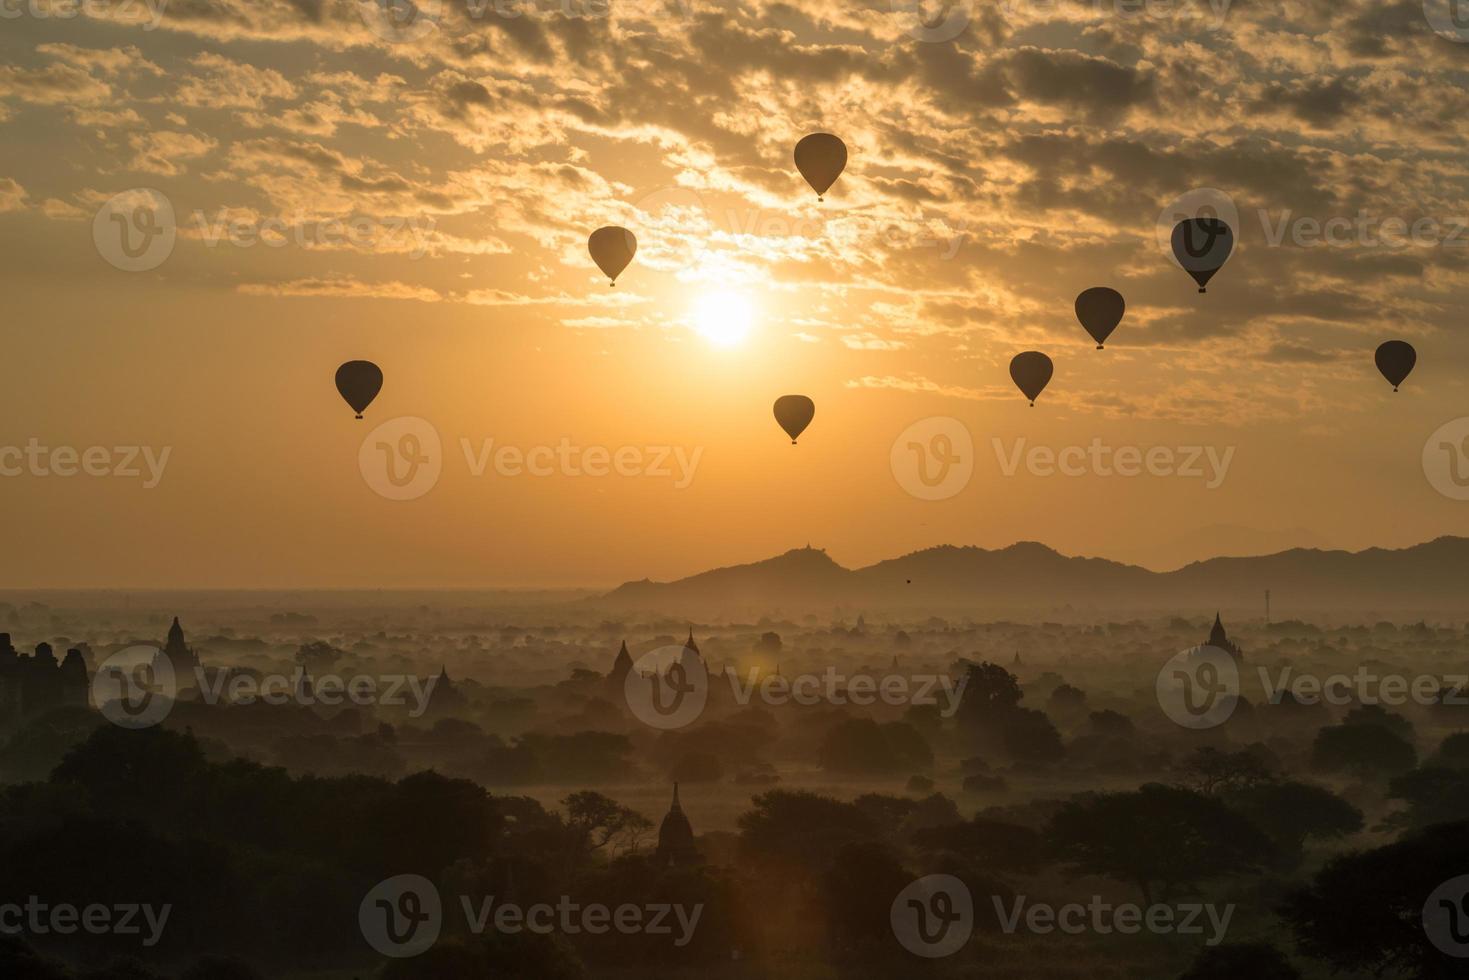 balões de ar quente sobrevoam as planícies de bagan durante o nascer do sol da manhã em mianmar. foto